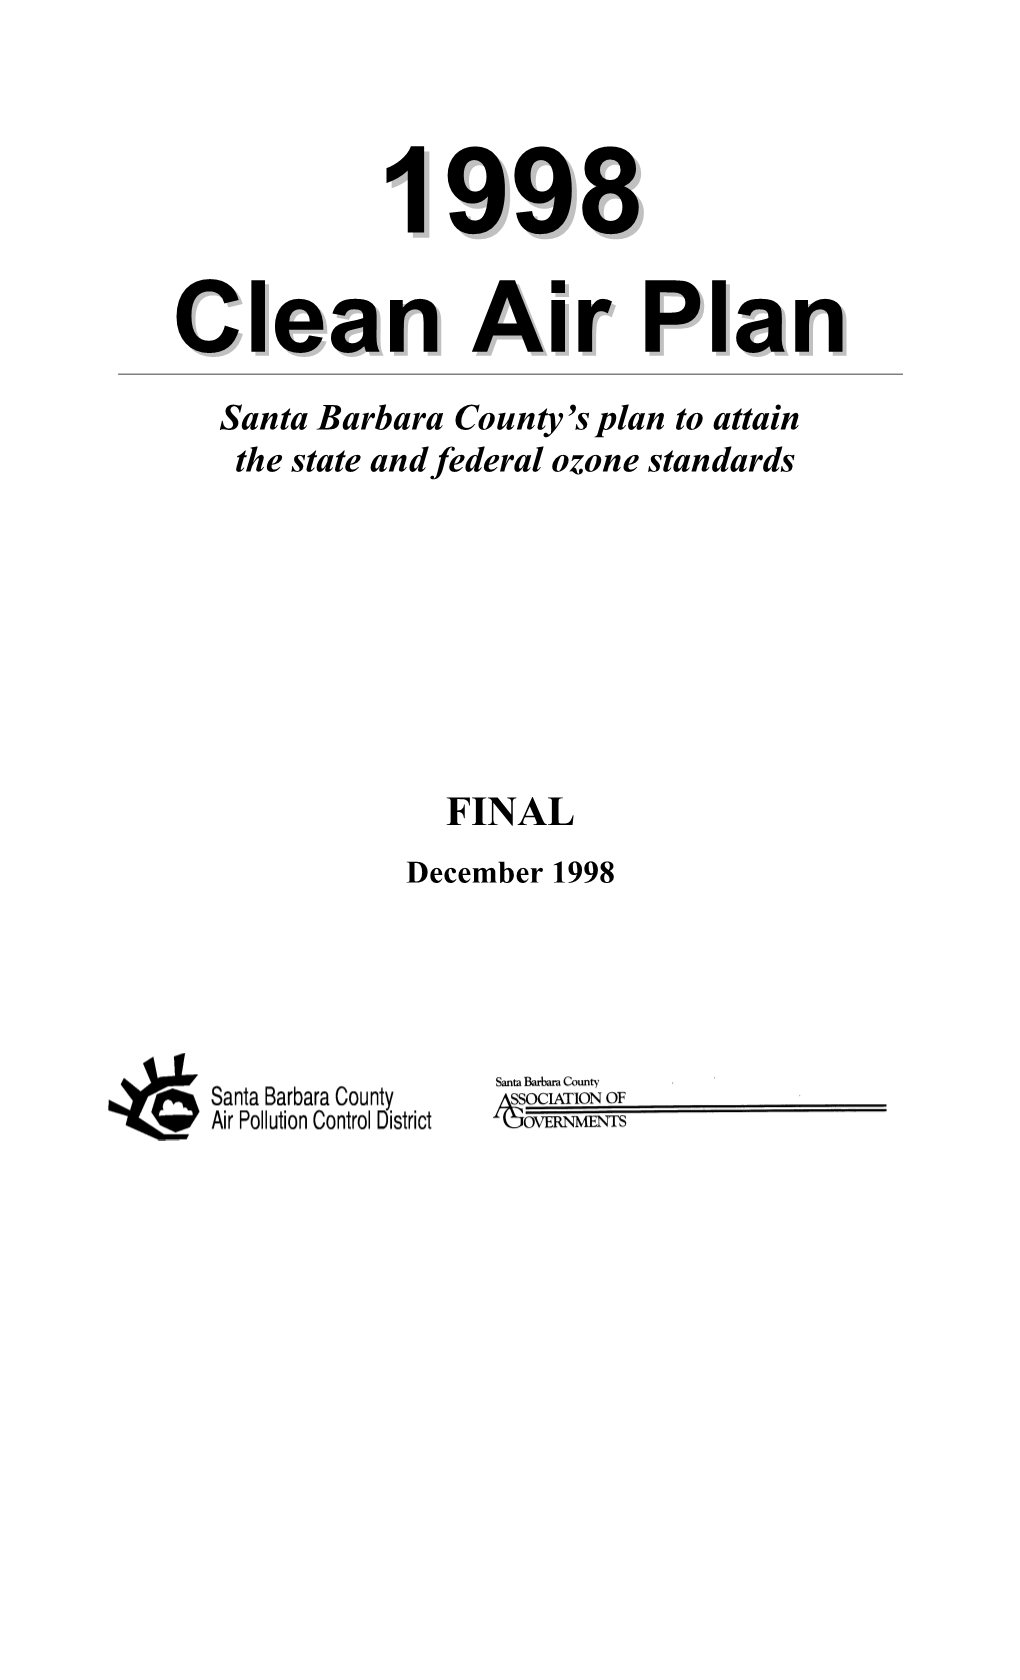 Final 1998 Clean Air Plan Appendices